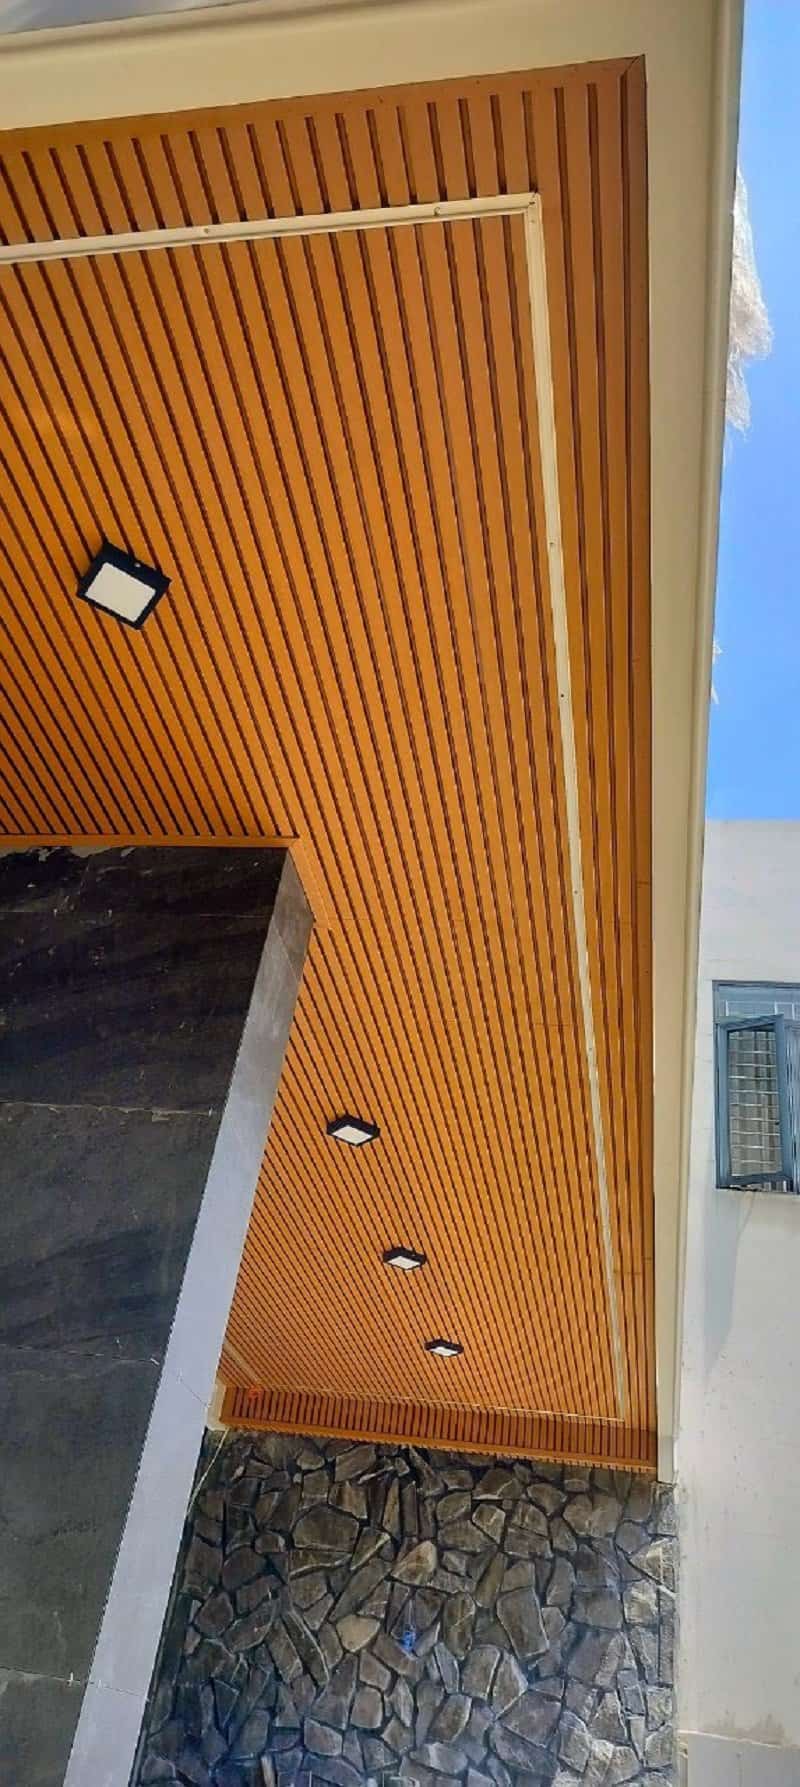 Hình ảnh công trình hoàn thiện lam sóng gỗ nhựa Galawood ốp trần.